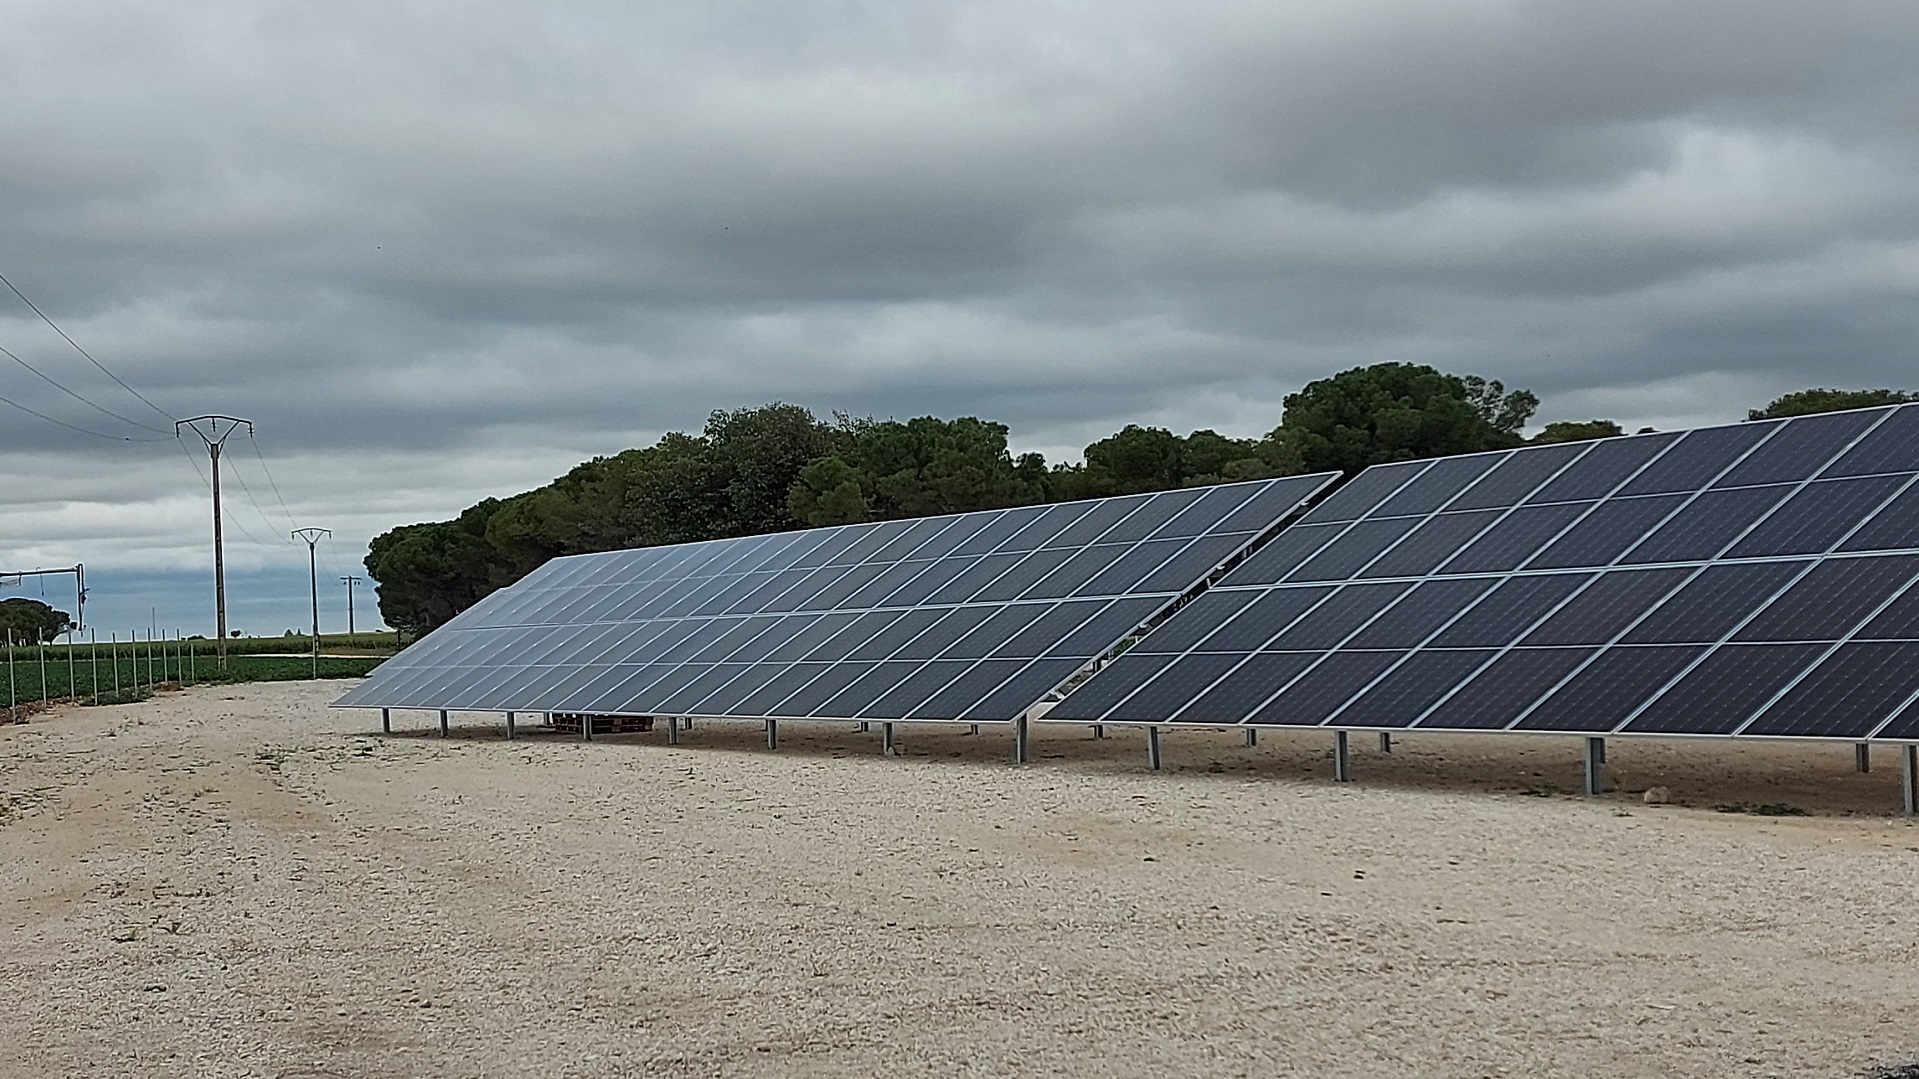 Instalación solar fotovoltaica para autoconsumo de 134,10 kWp en Fompedraza (Valladolid)